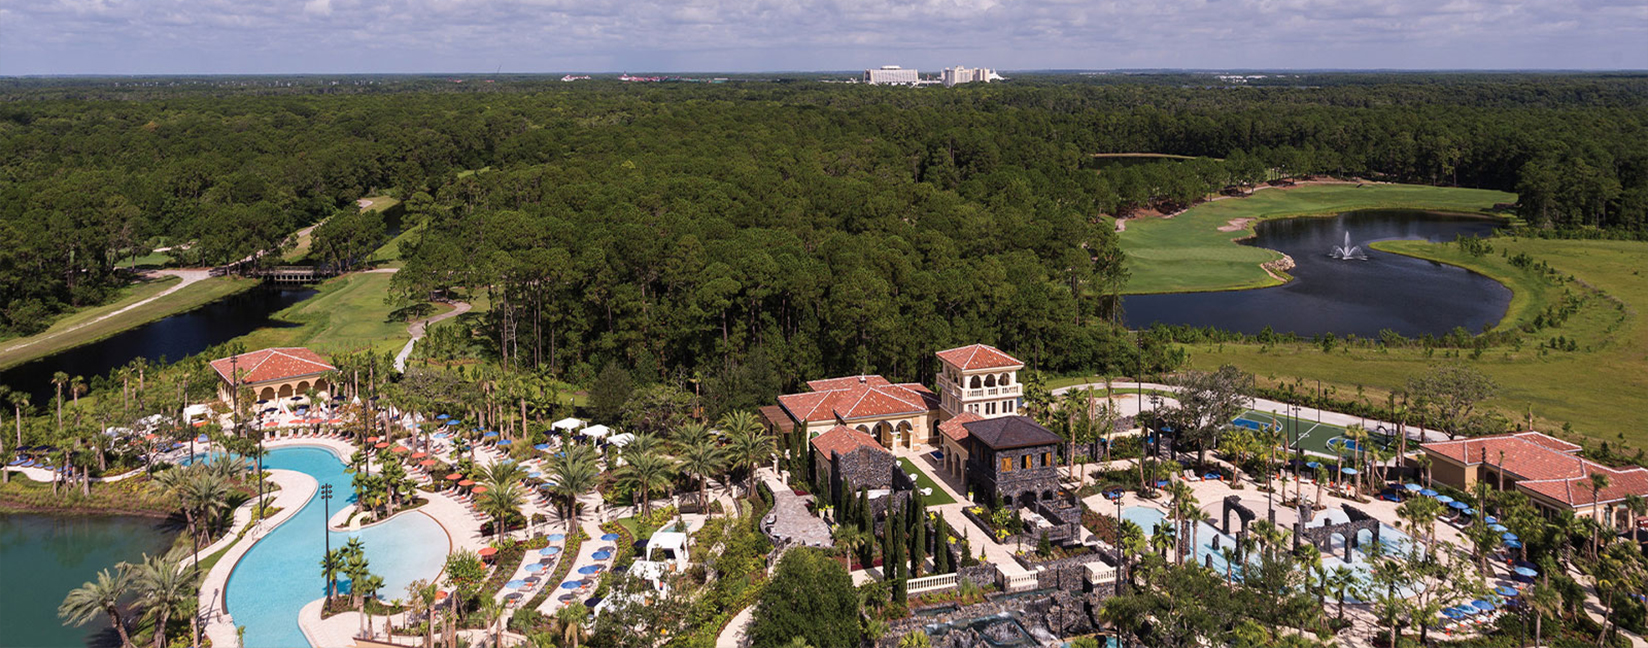 Four Seasons Resort Orlando deals